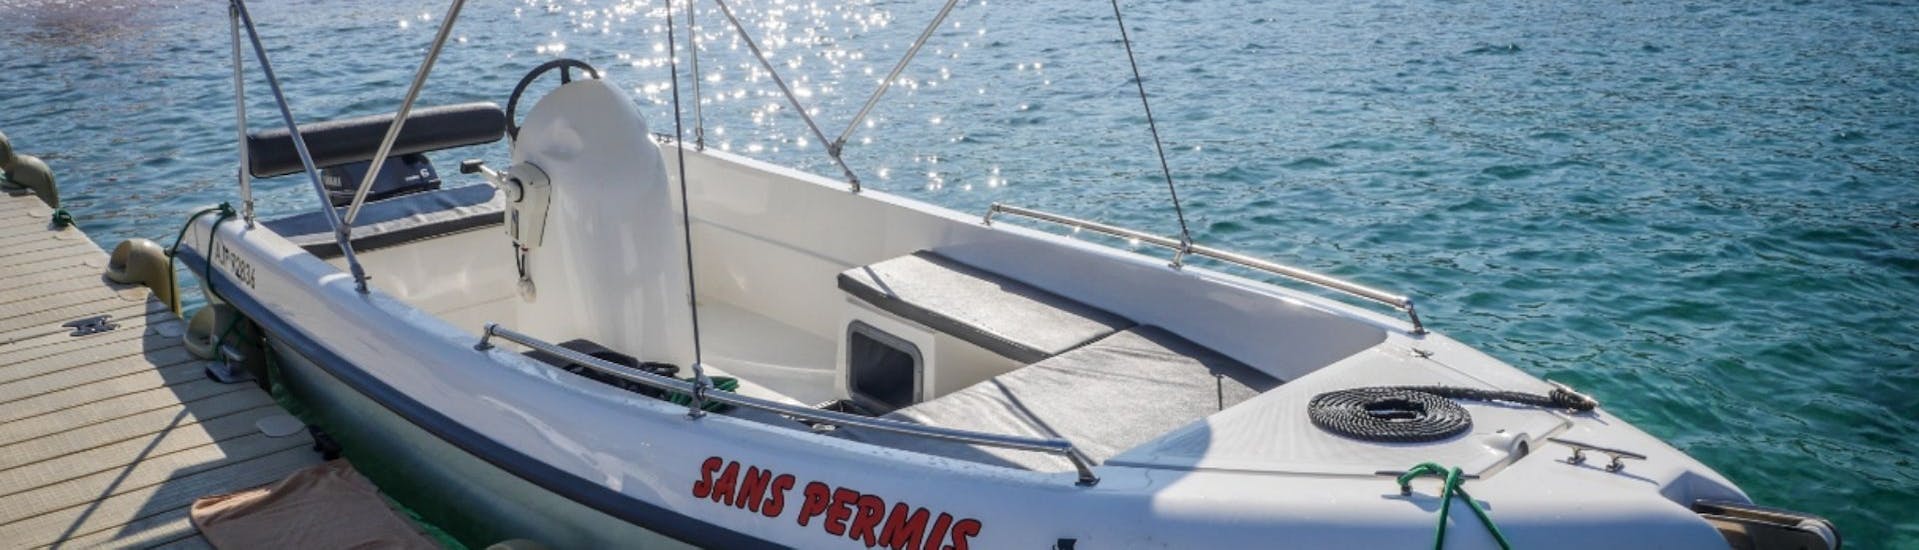 Bootsverleih in Cargèse (bis zu 4 Personen) ohne Führerschein.